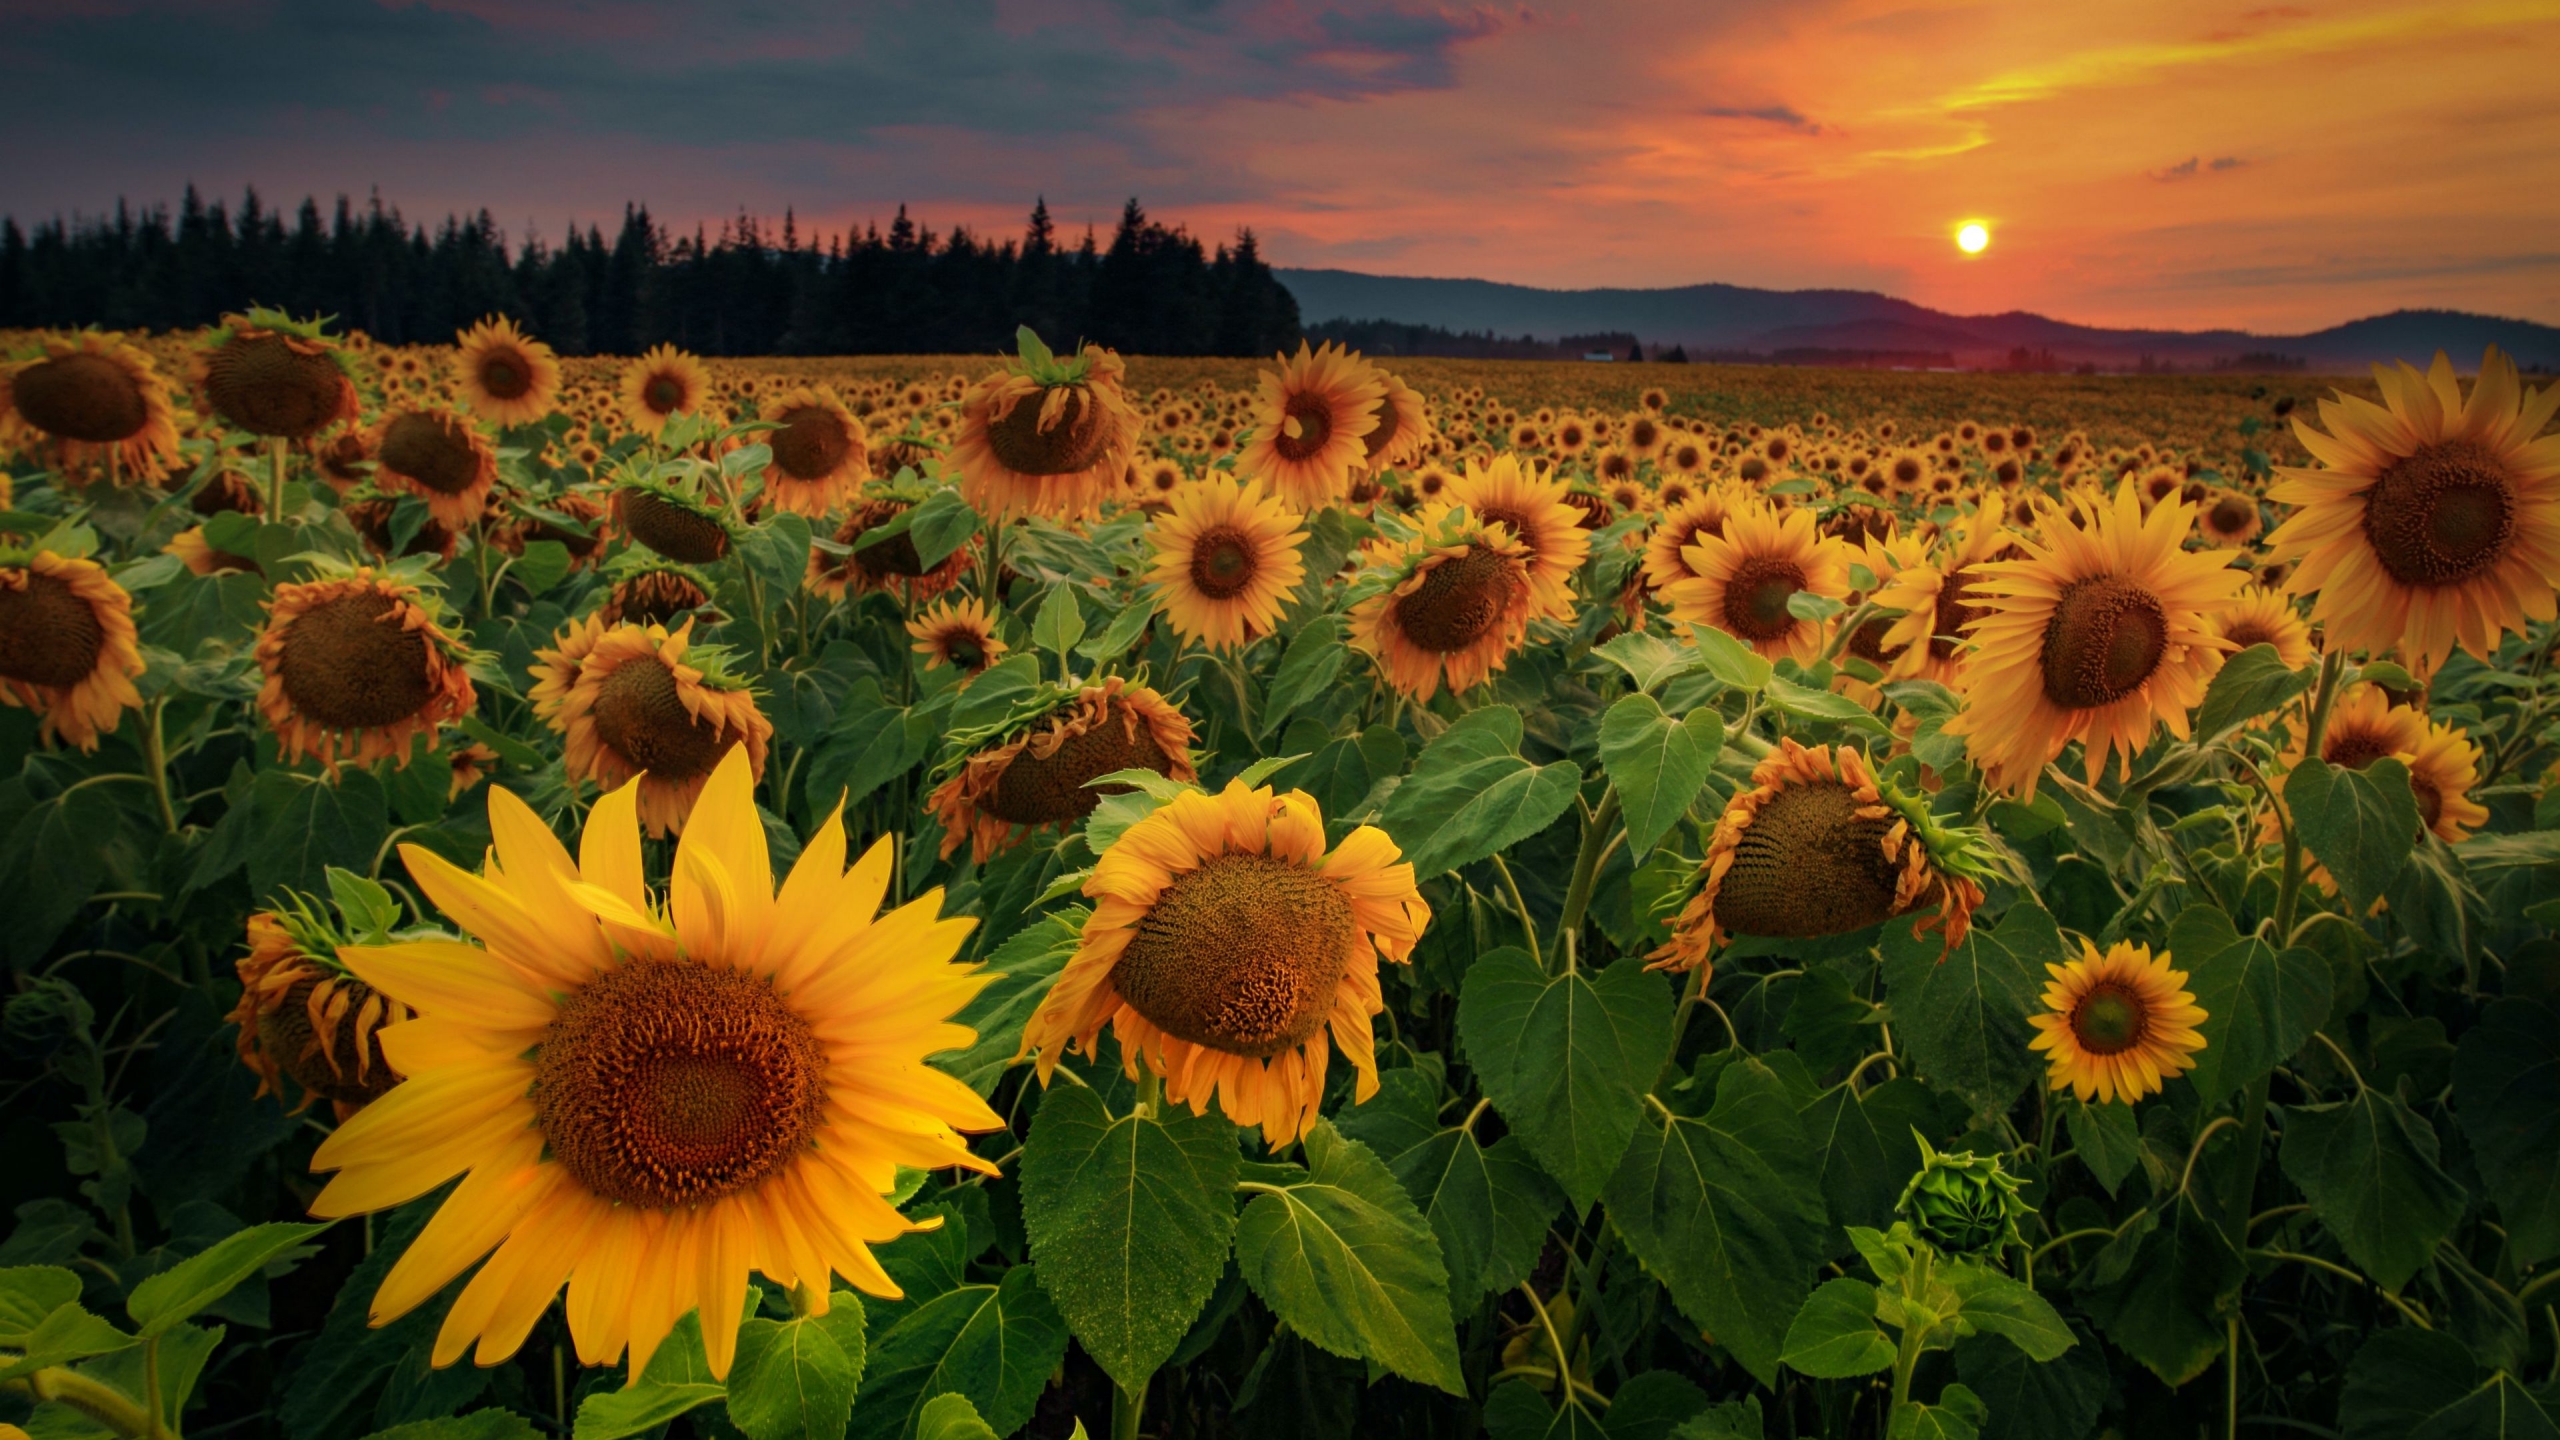 Sunflower Field at sunset Wallpaper 4k Ultra HD ID:5863